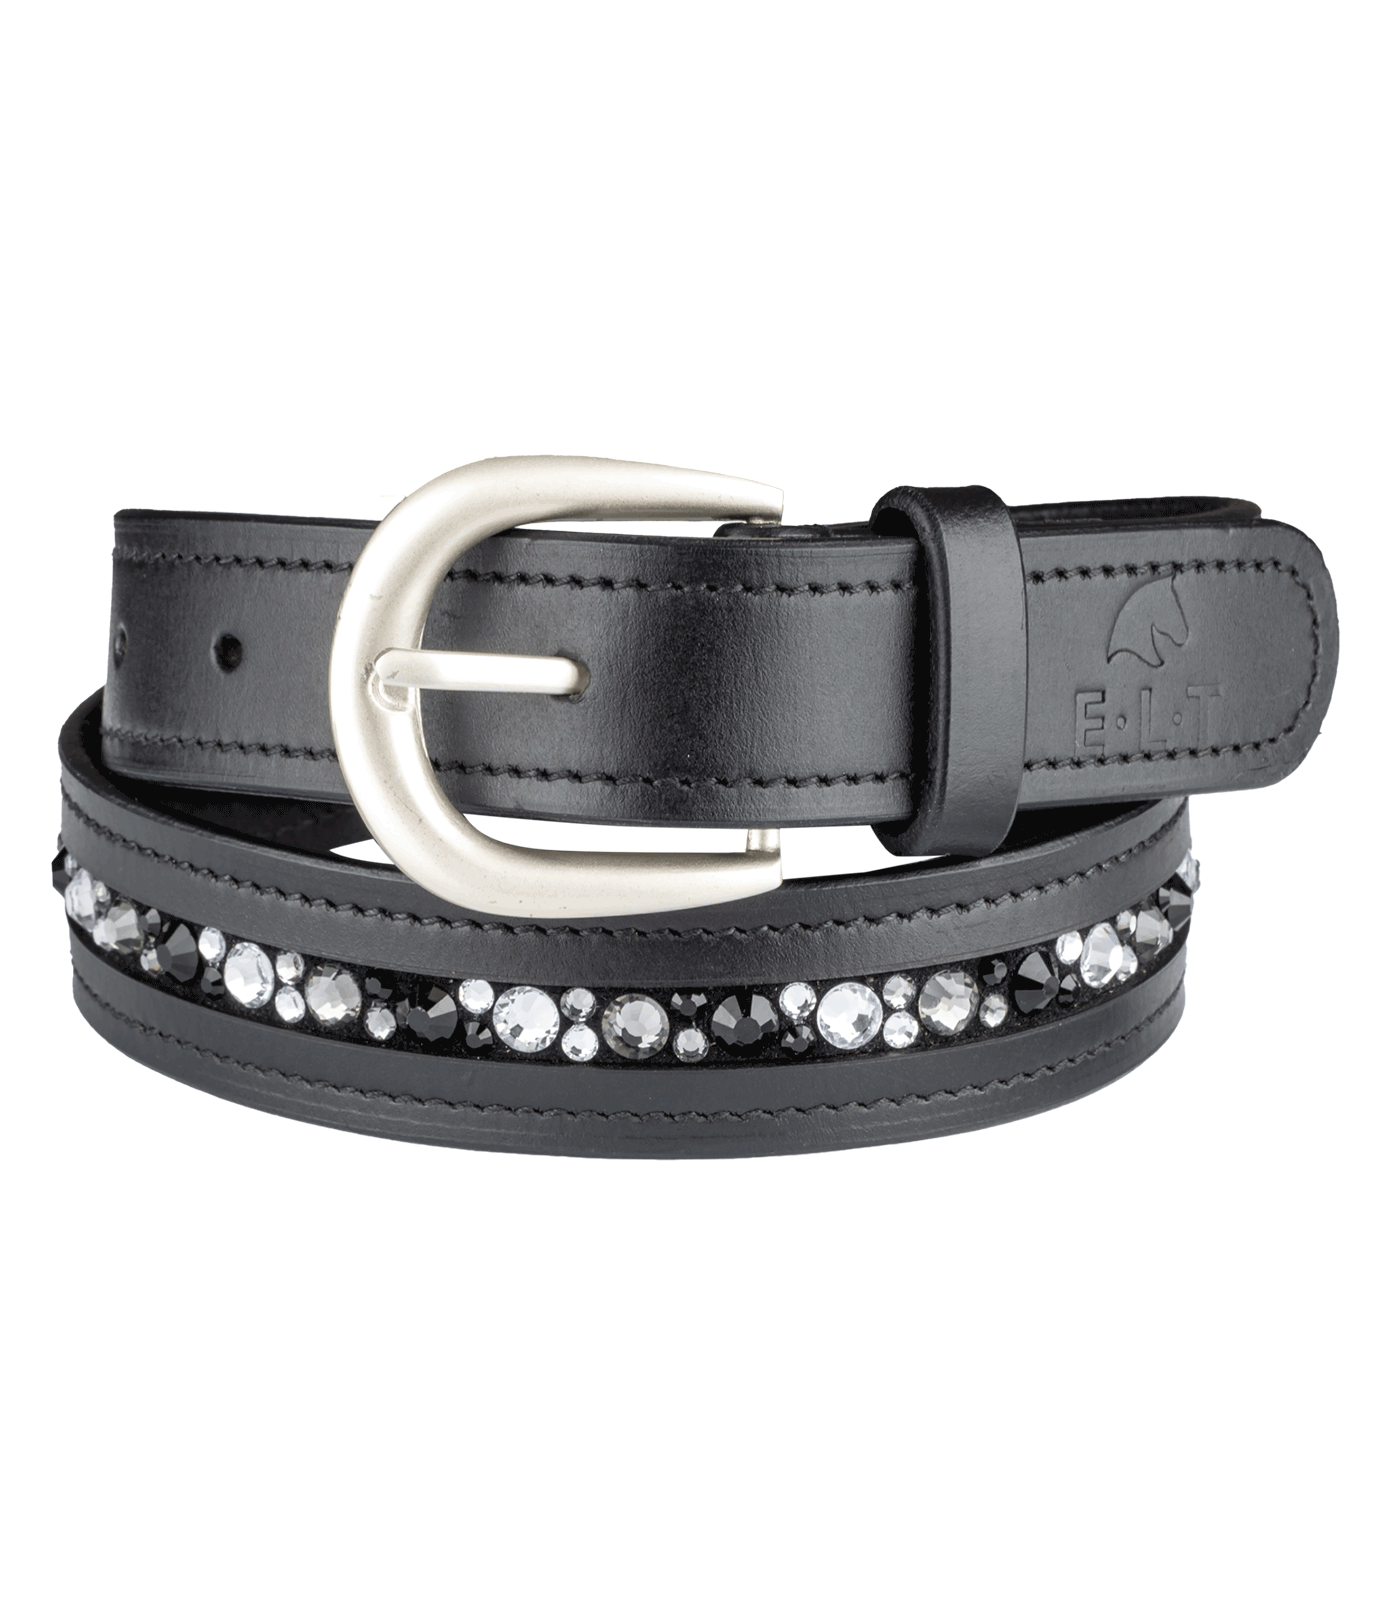 Jewel leather belt black